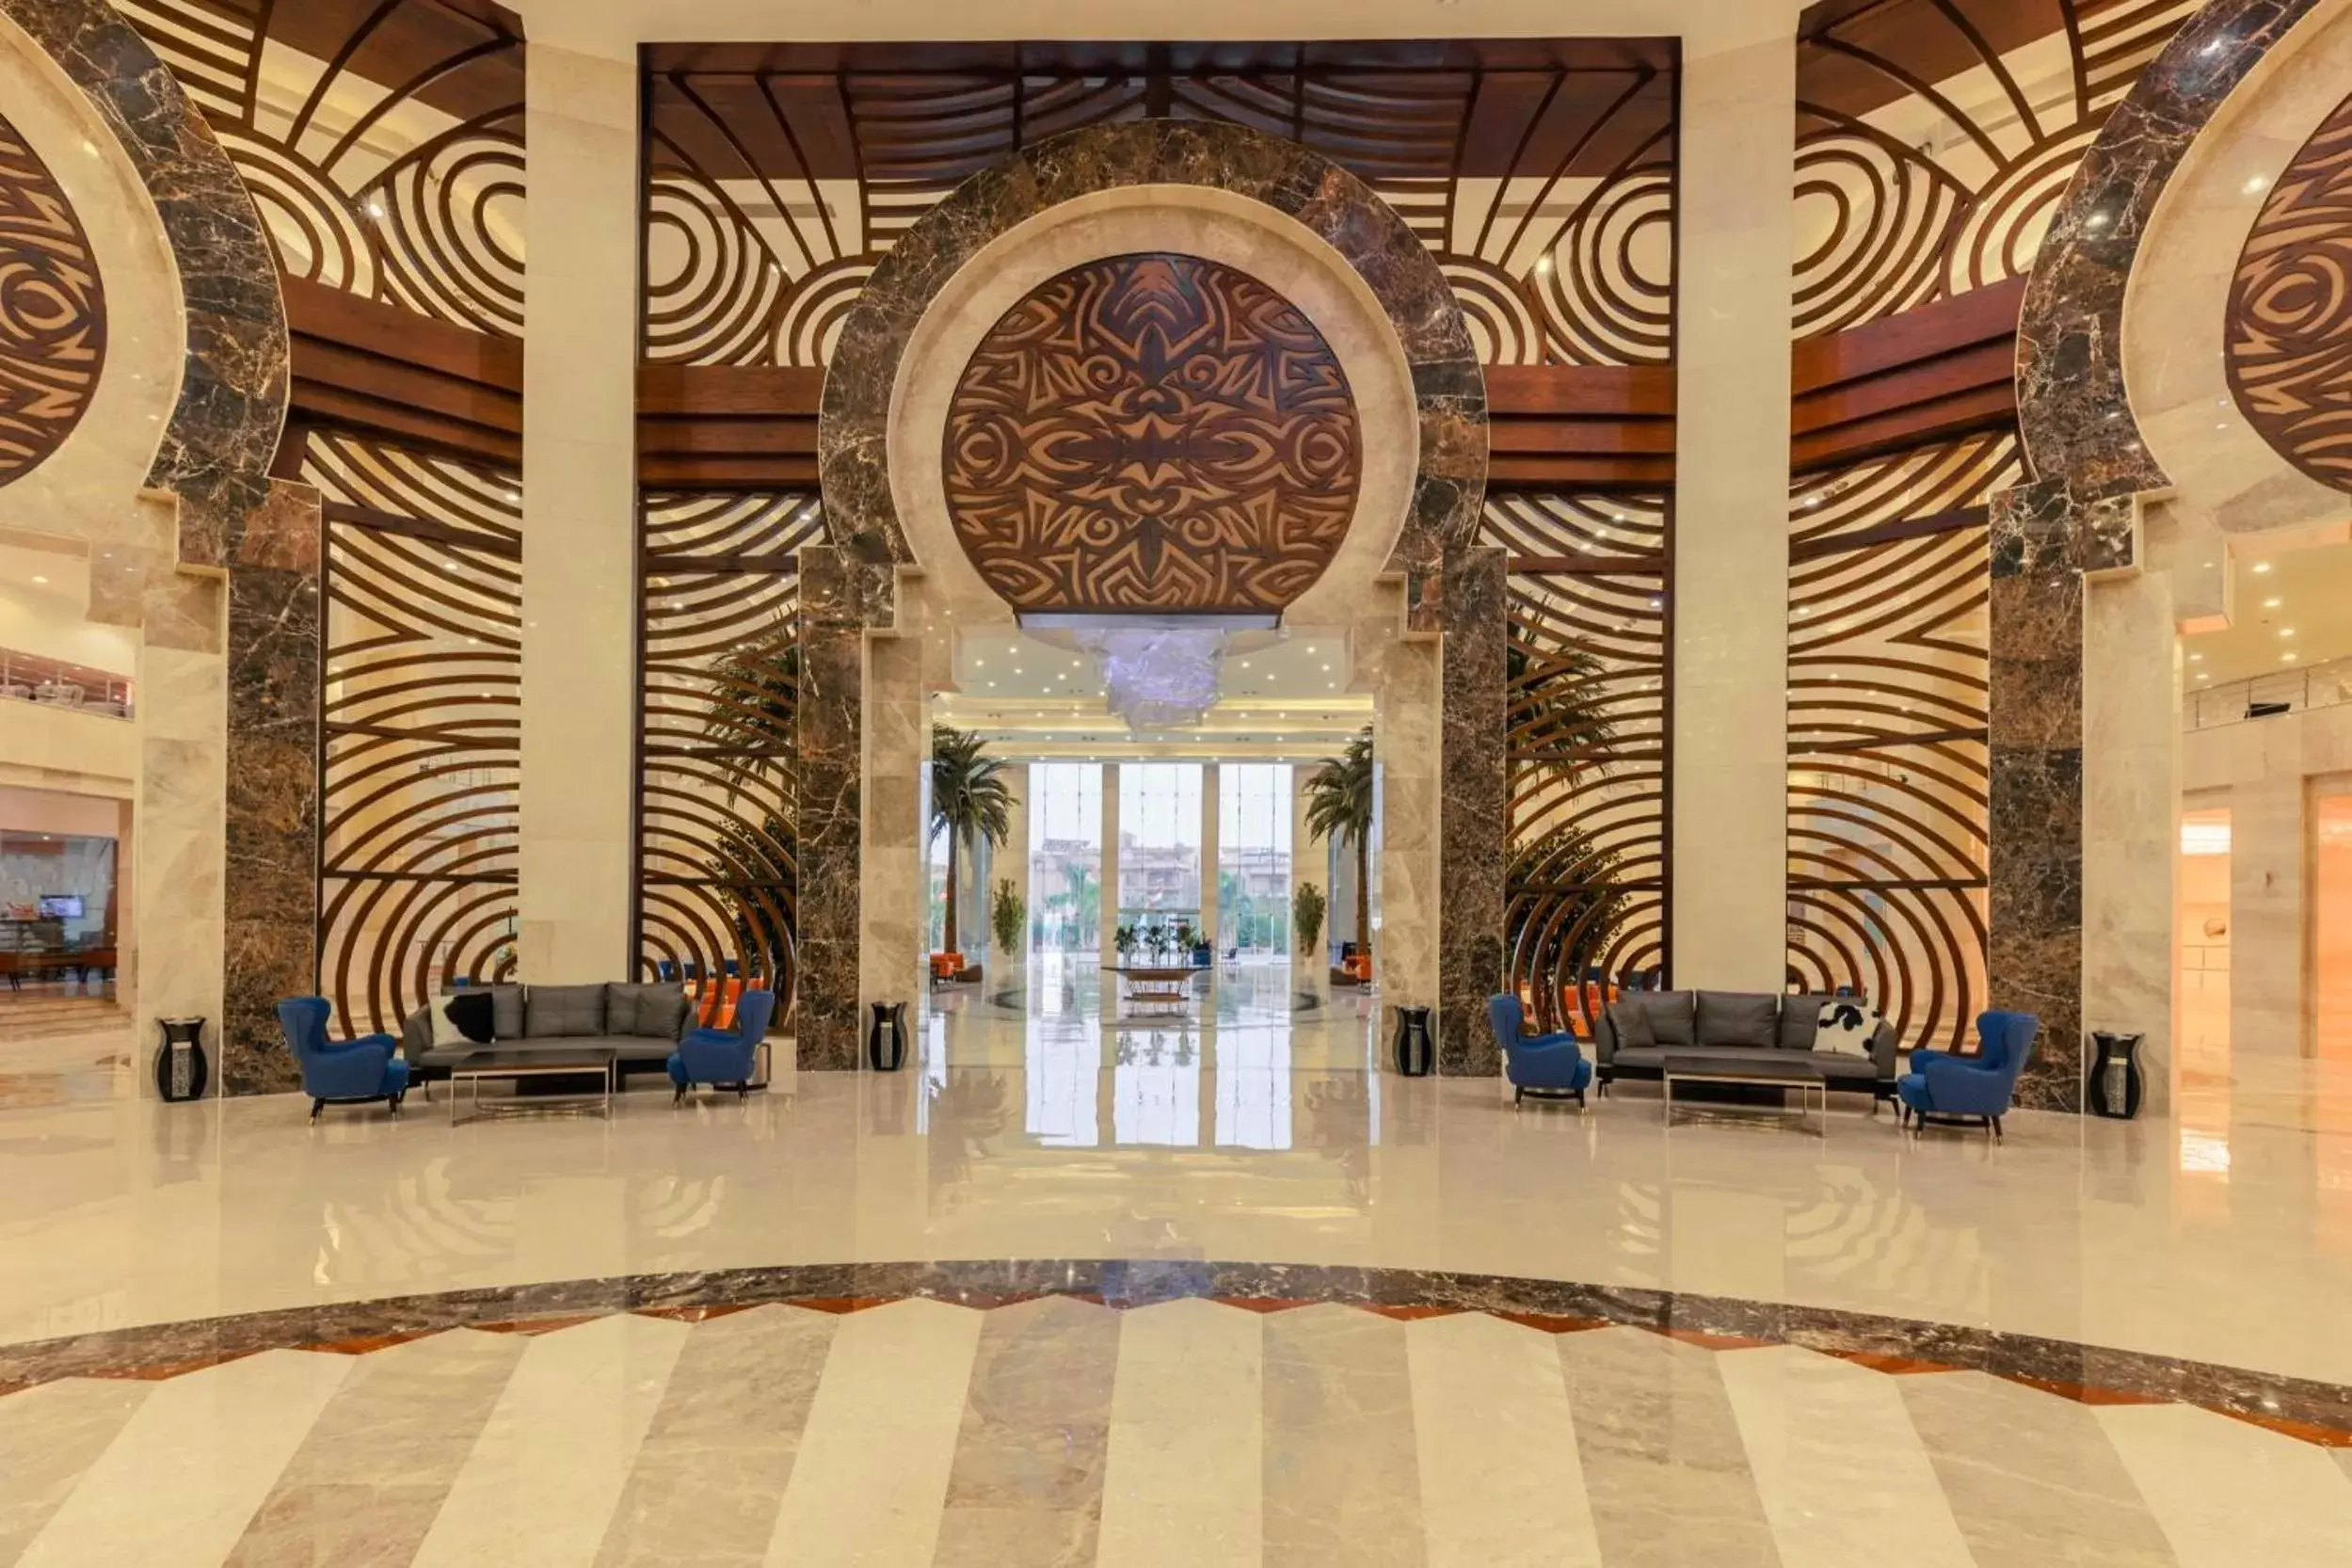 Lobby or reception in Triumph Luxury Hotel